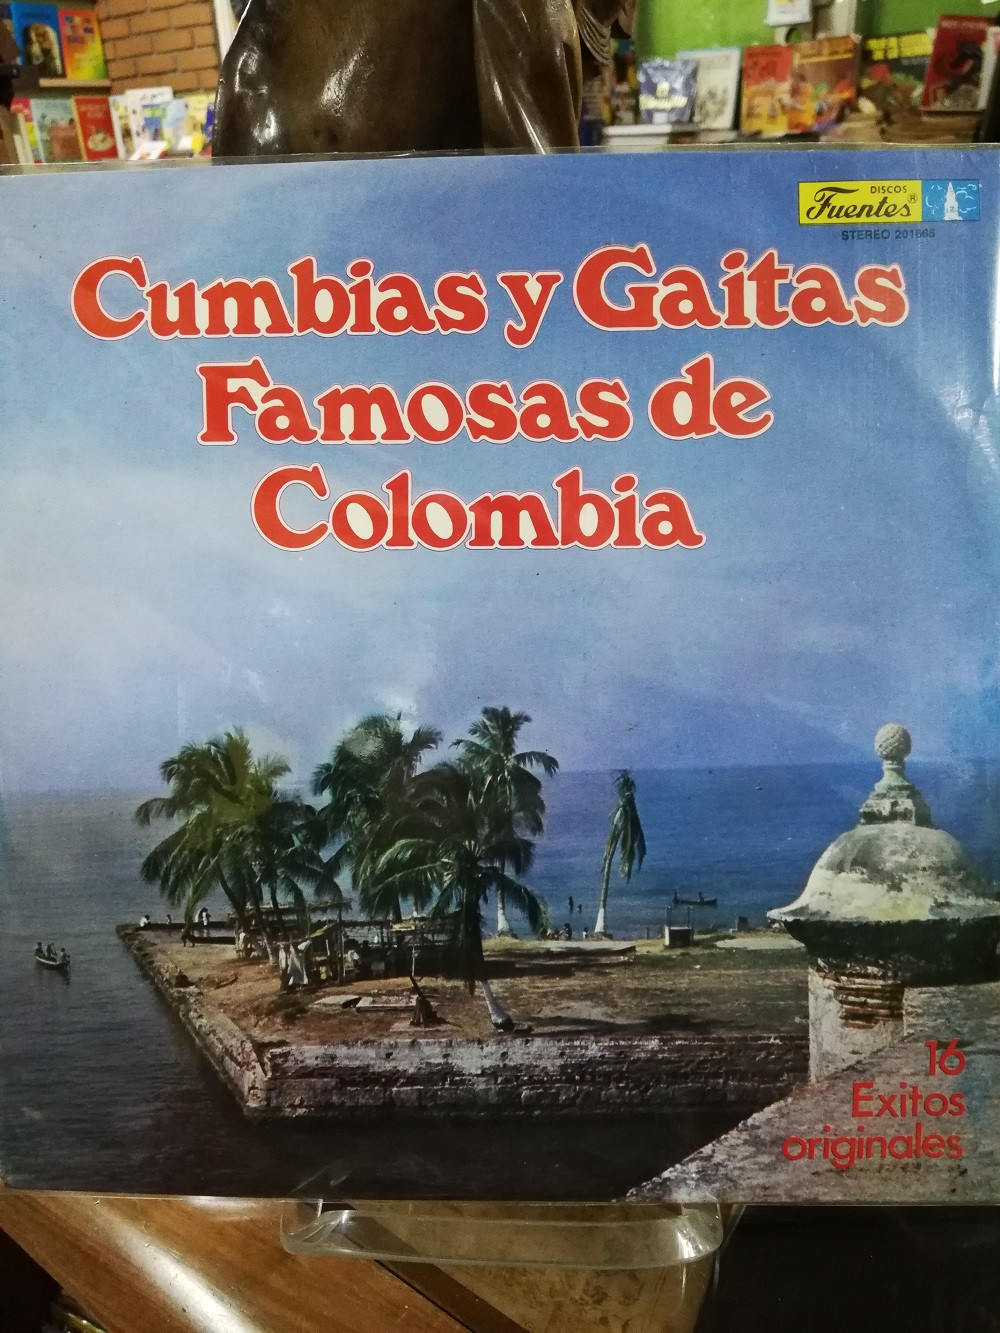 Imagen LP CUMBIAS Y GAITAS FAMOSAS DE COLOMBIA - 16 EXITOS ORIGINALES 1